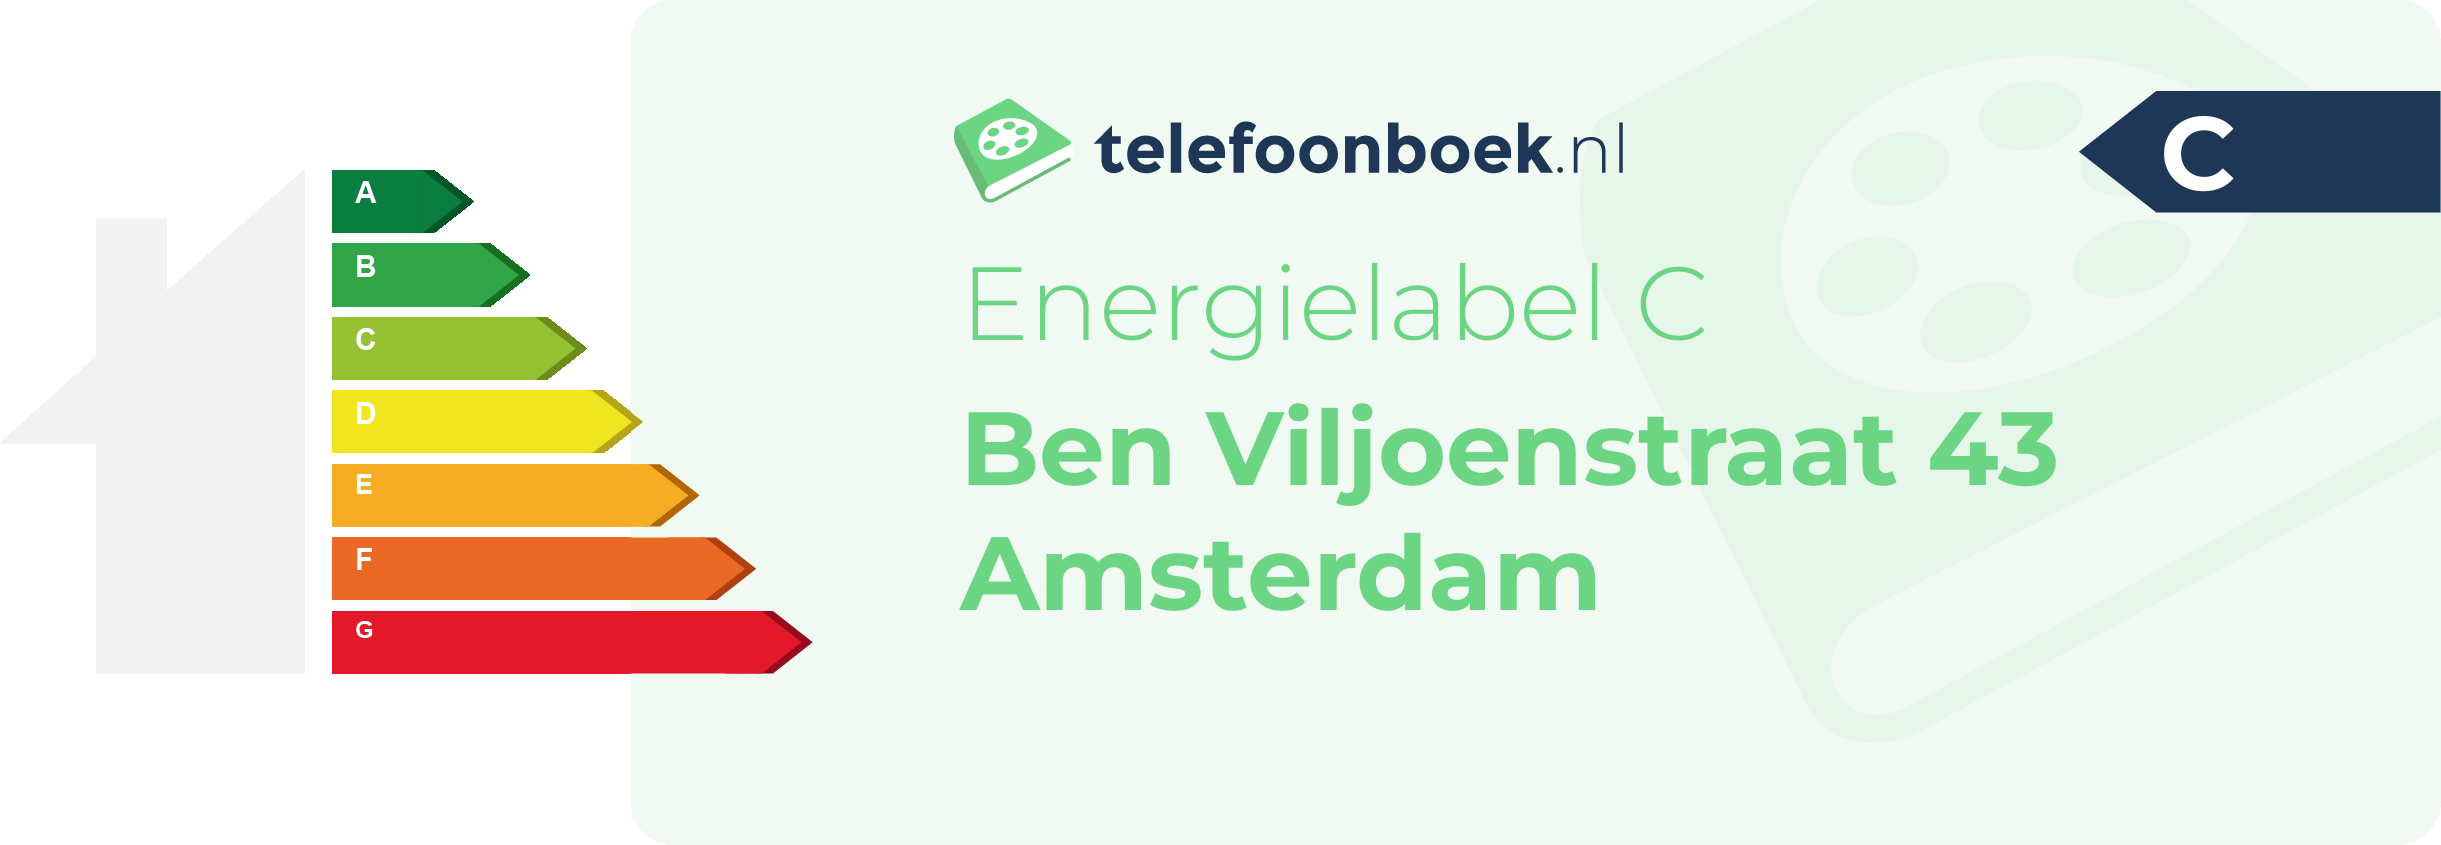 Energielabel Ben Viljoenstraat 43 Amsterdam